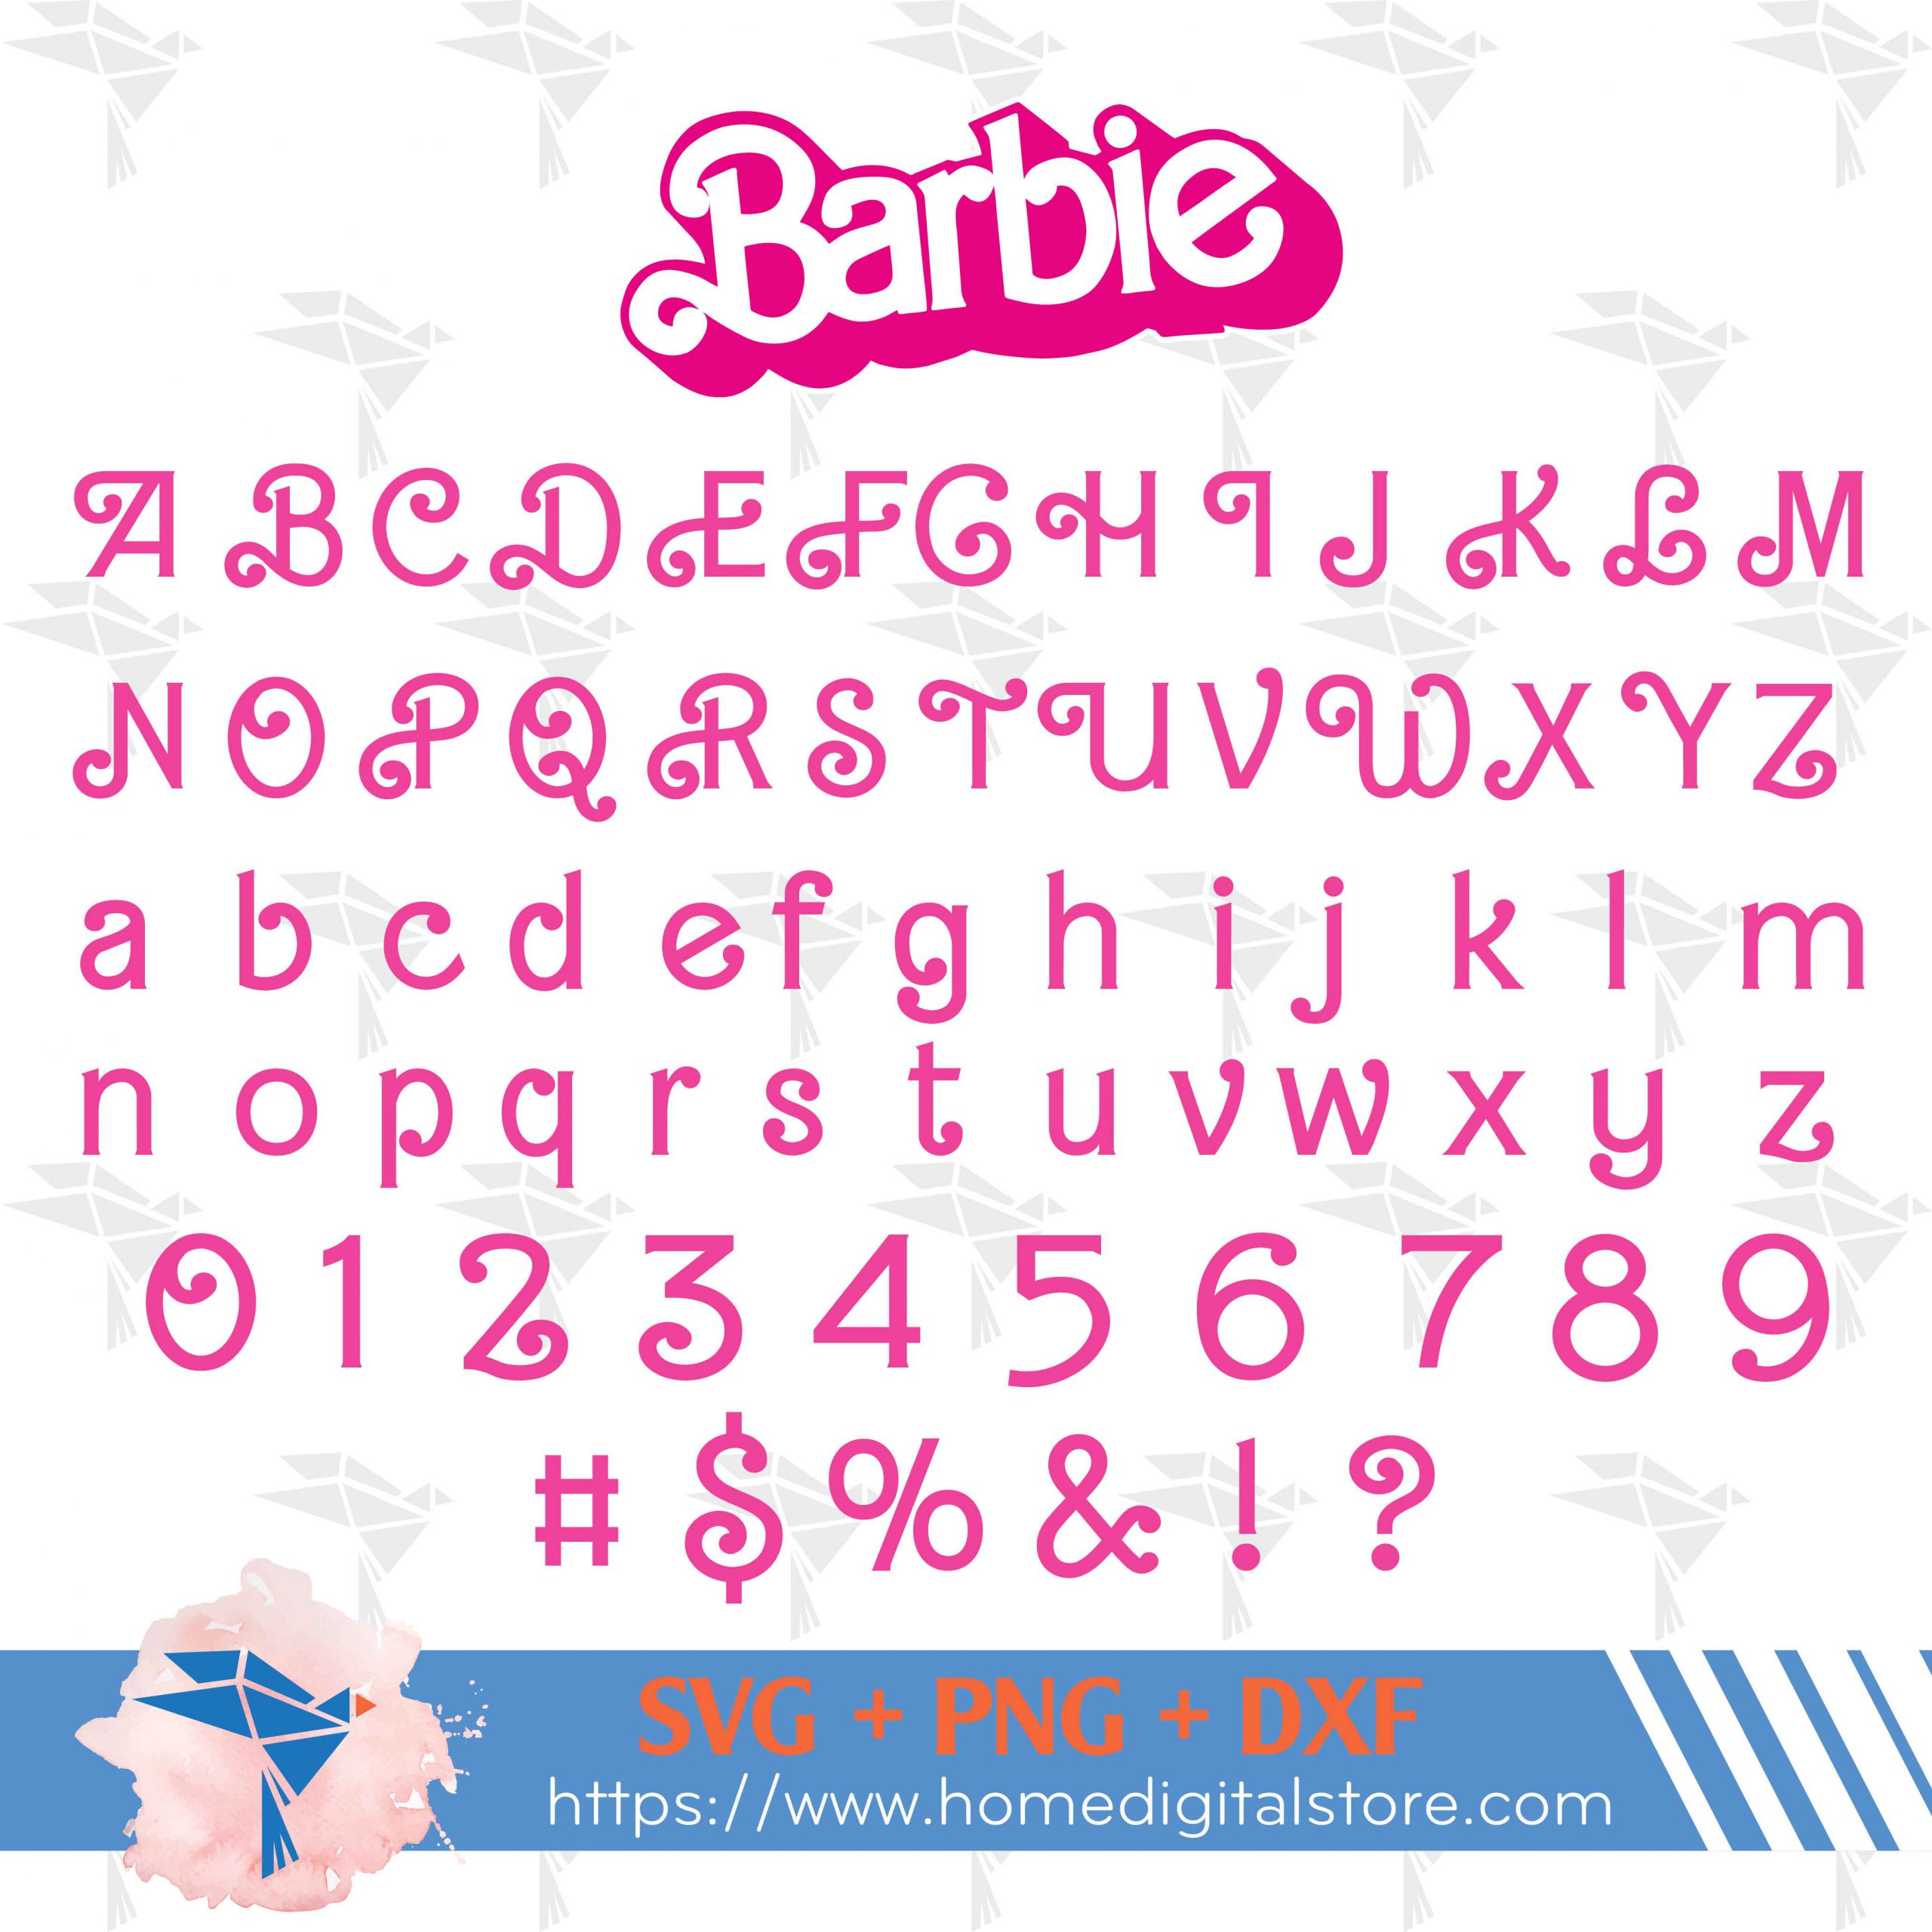 adelig Dom stole Barbie Font SVG, PNG, DXF